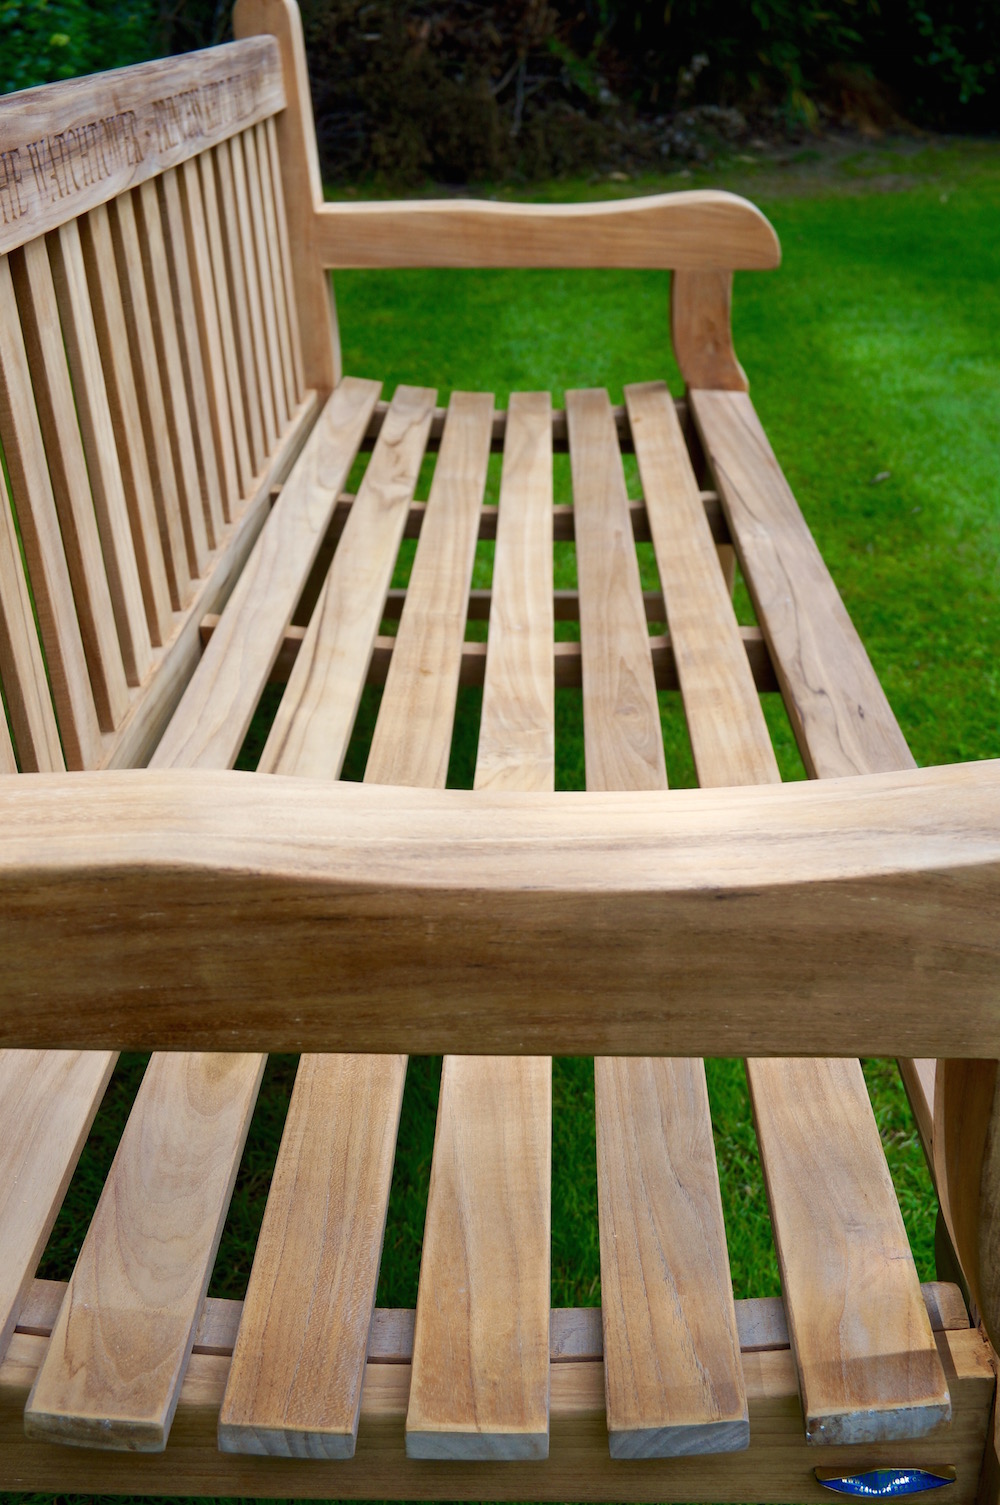 teak-garden-bench-uk-makemesomethingspecial.co.uk